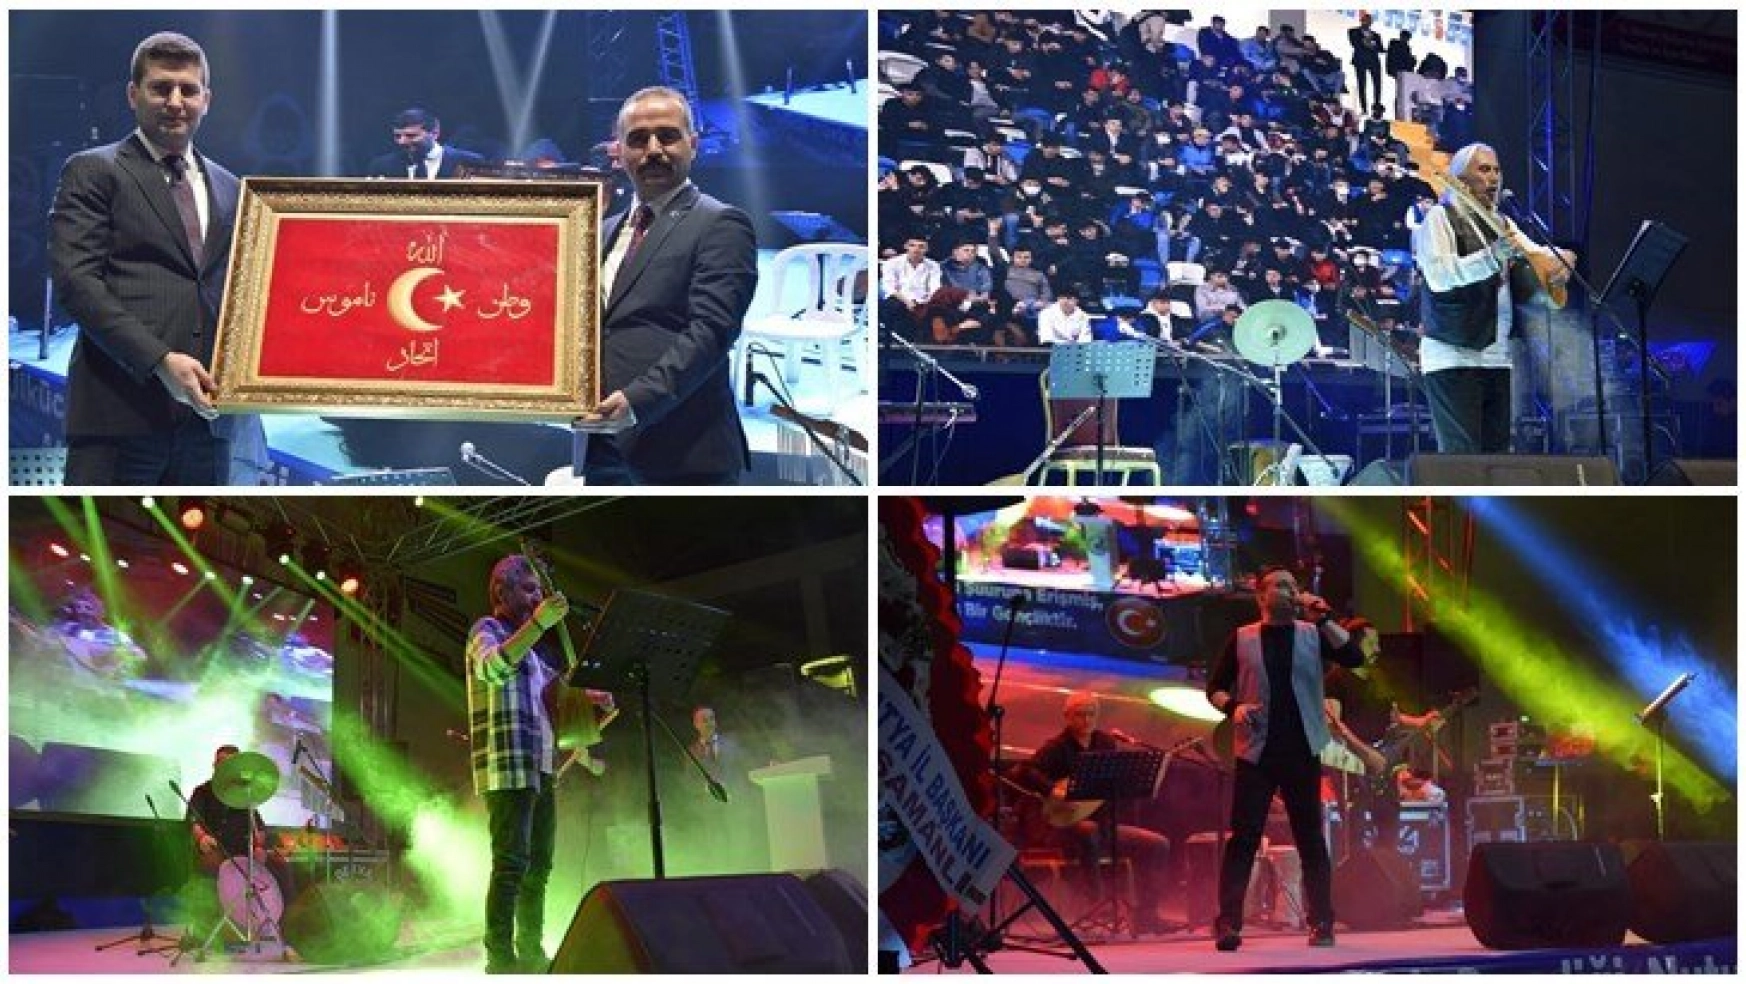 Ülkü Ocaklarından, Mazi'den Ati'ye Hedef Güçlü Türkiye Konseri